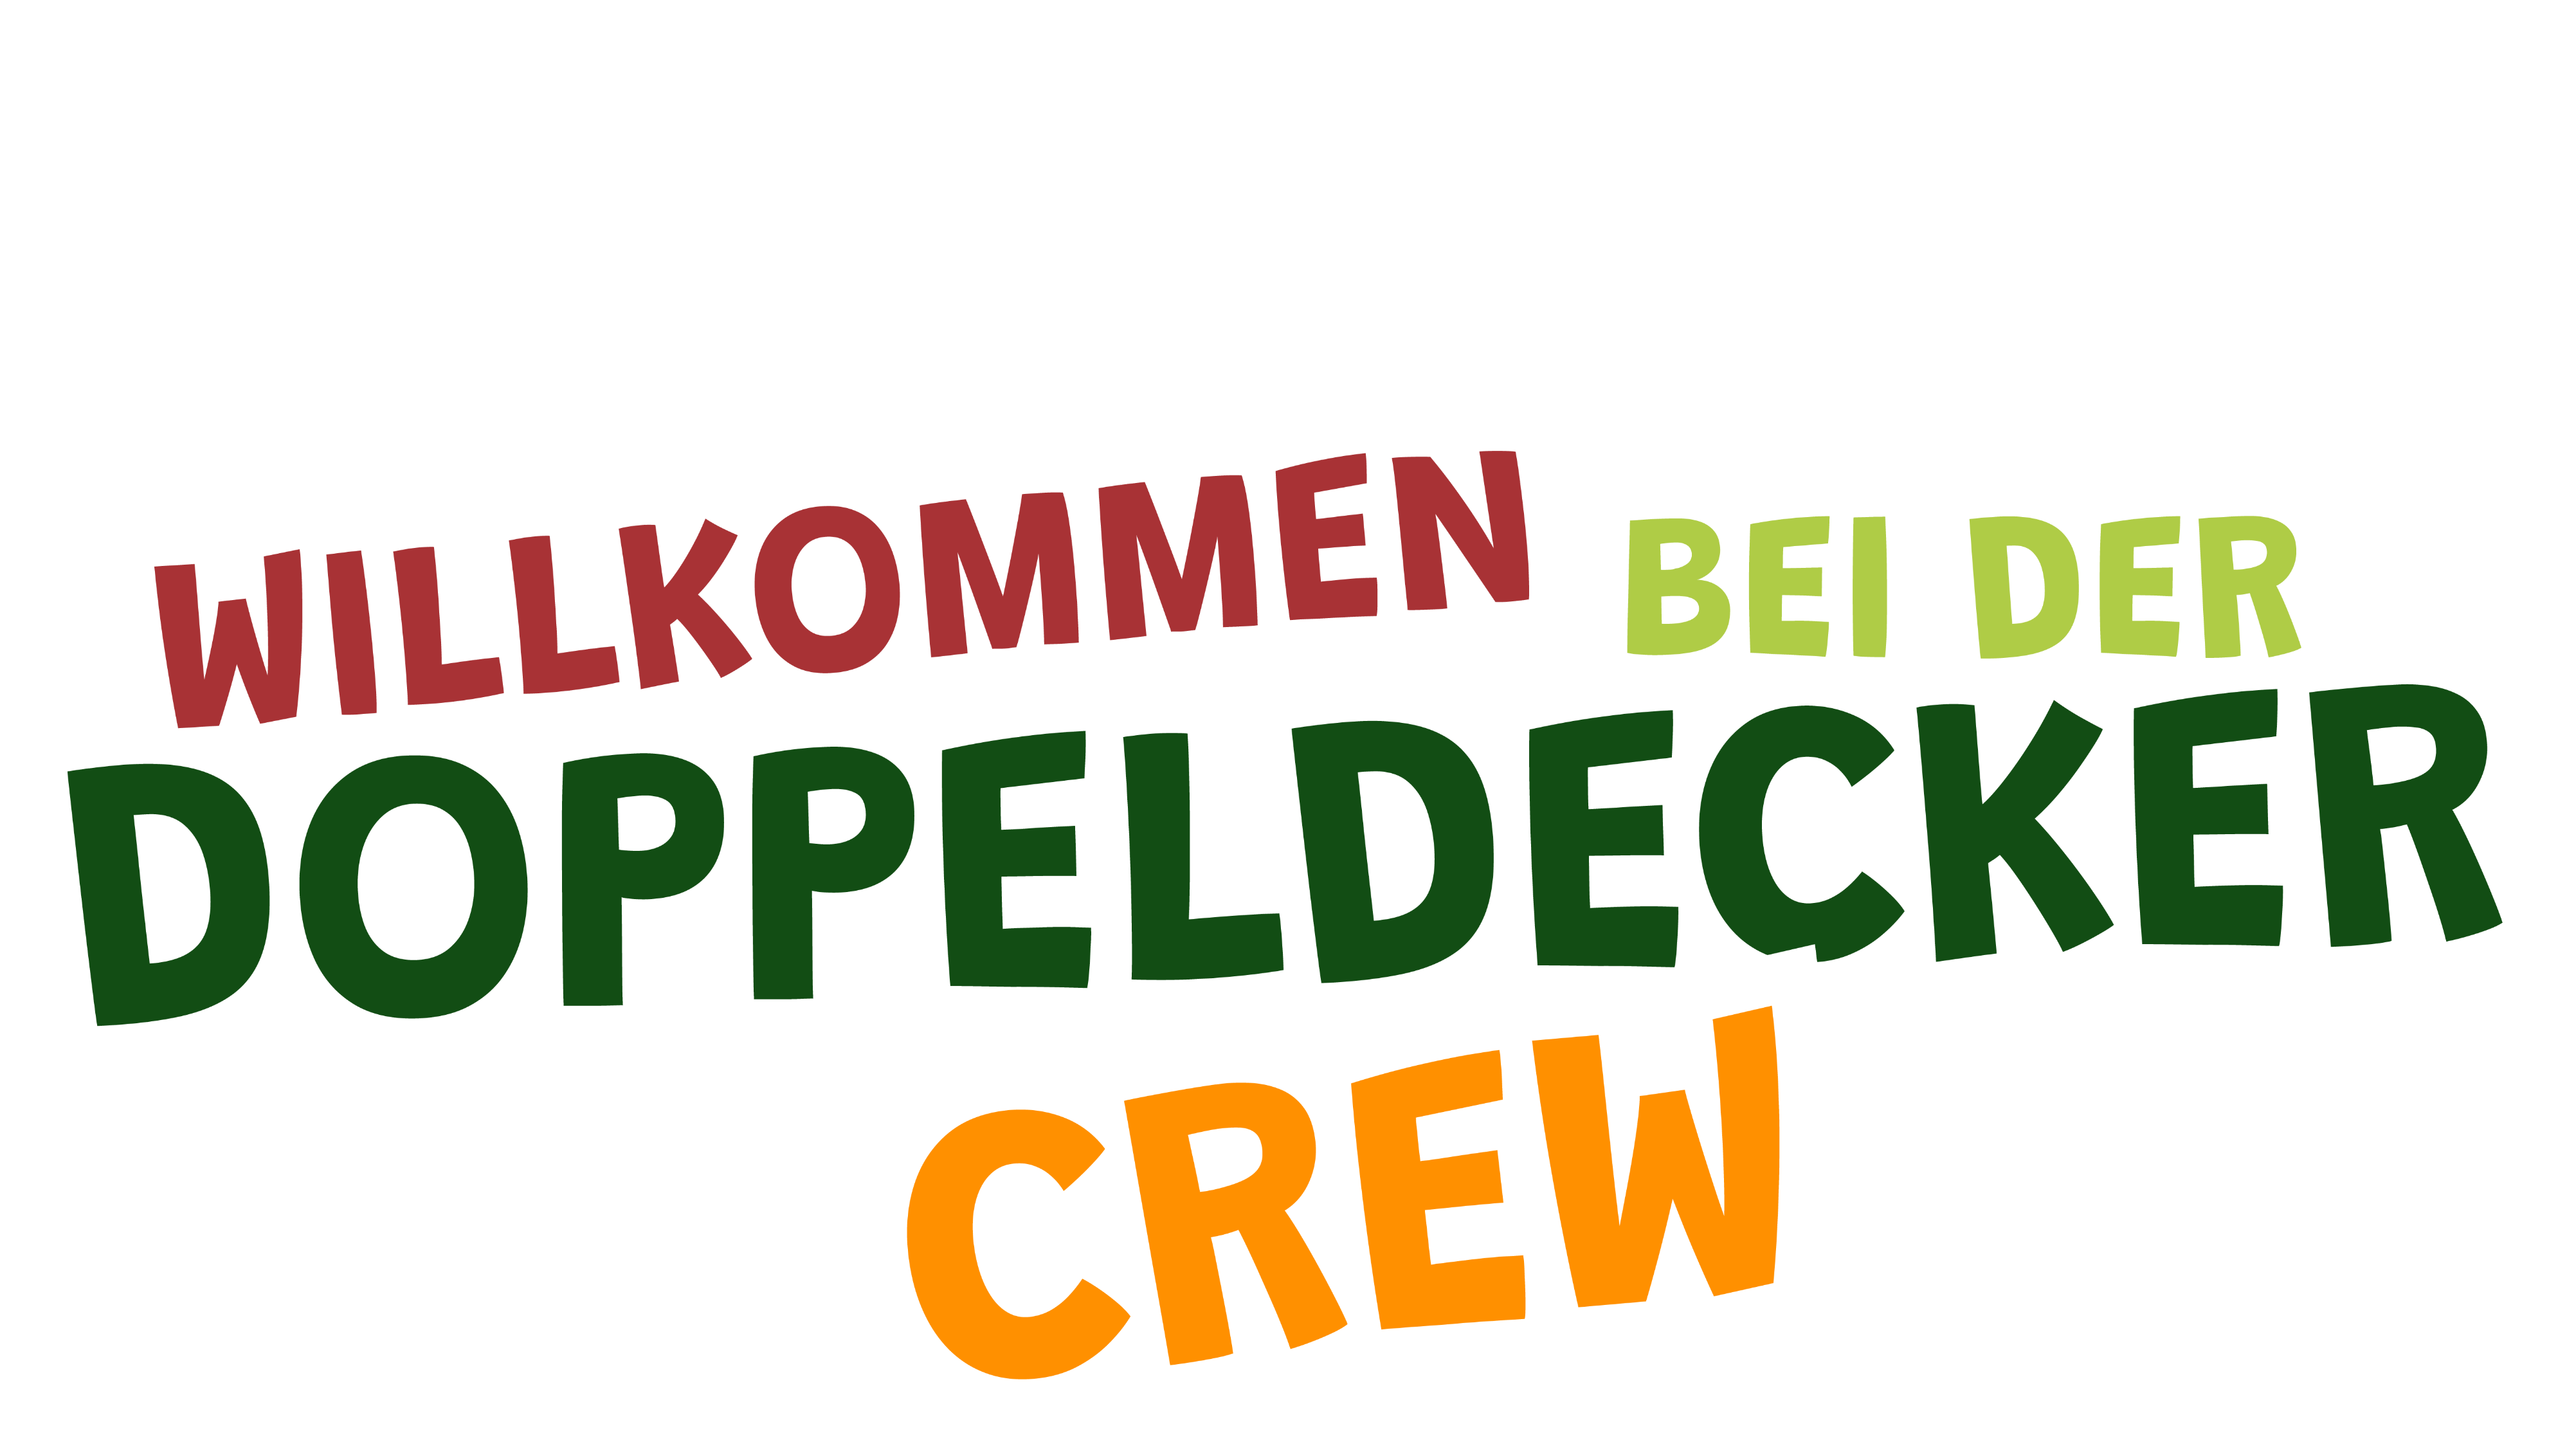 (c) Doppeldecker-crew.de